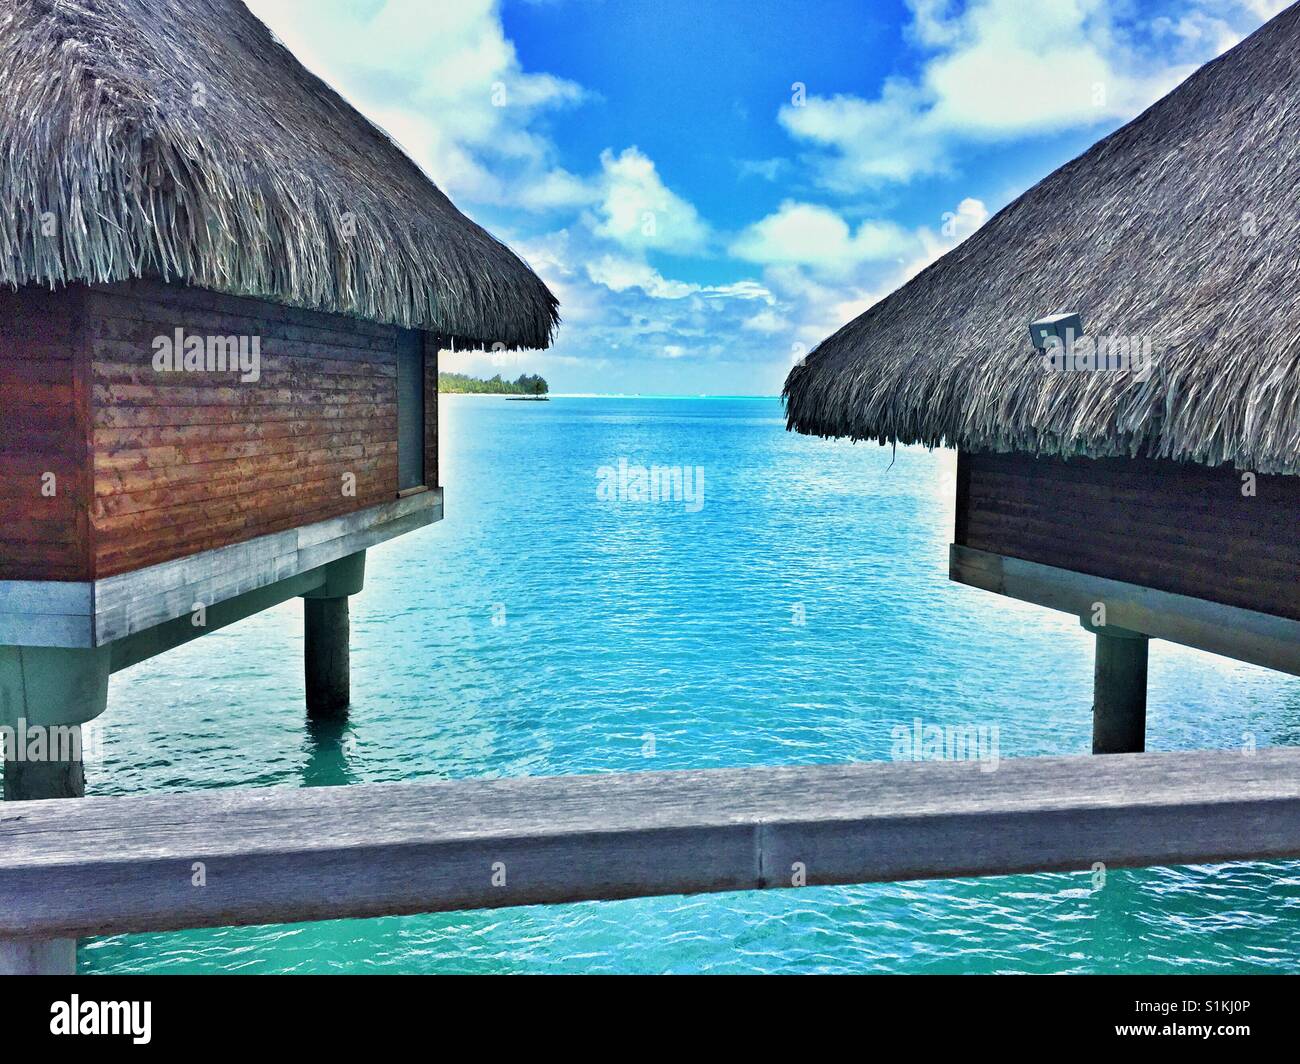 Overwater bungalows in Bora Bora, French Polynesia Stock Photo